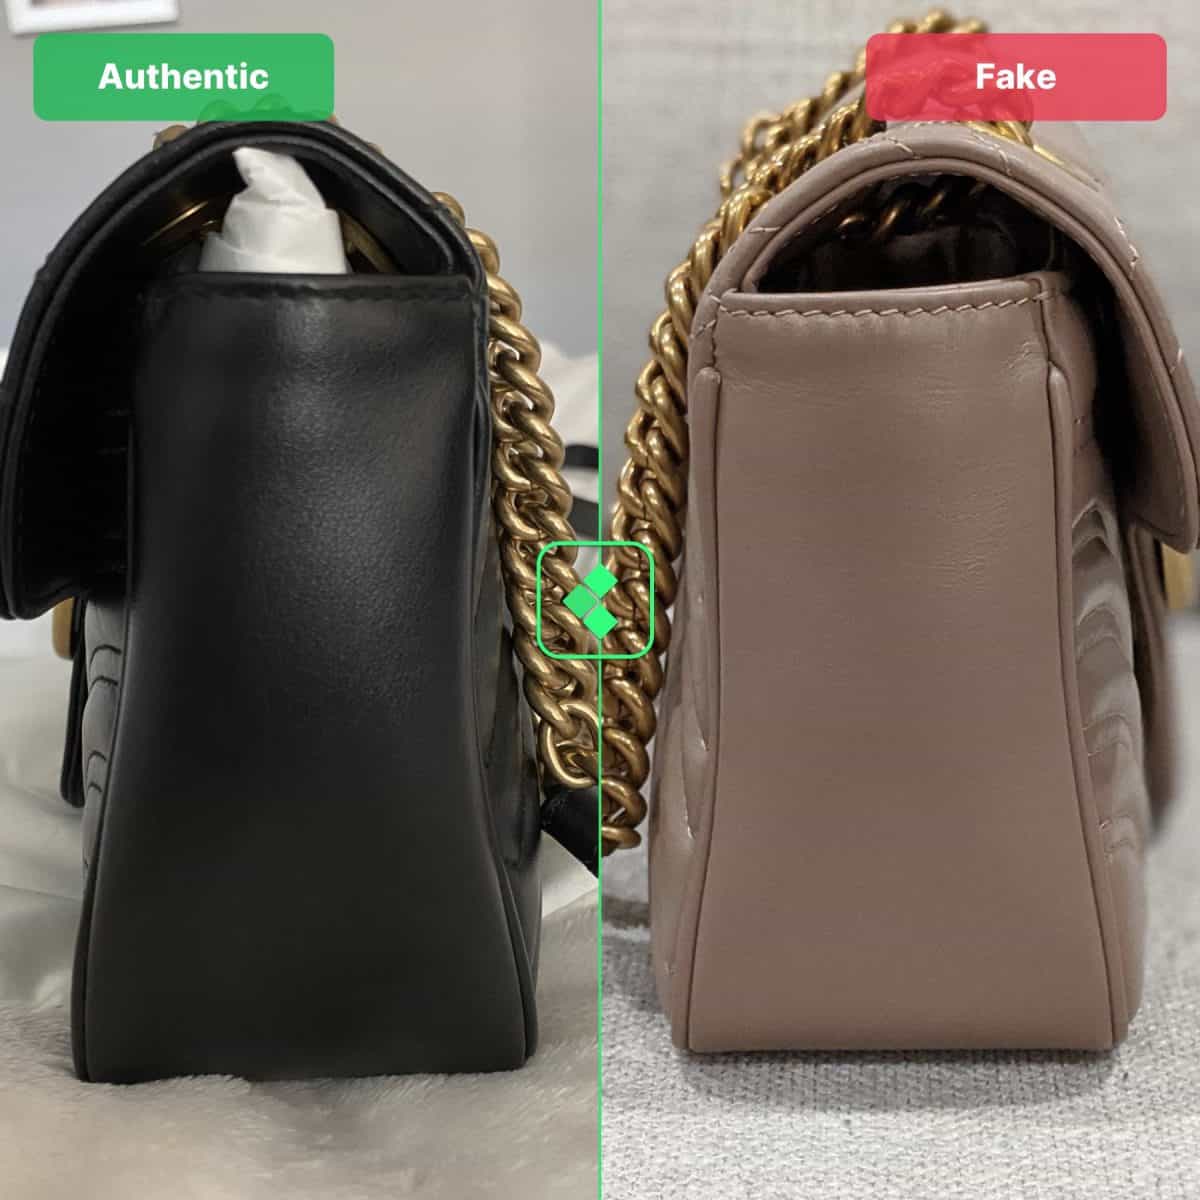 authentic vs fake gucci gg bag